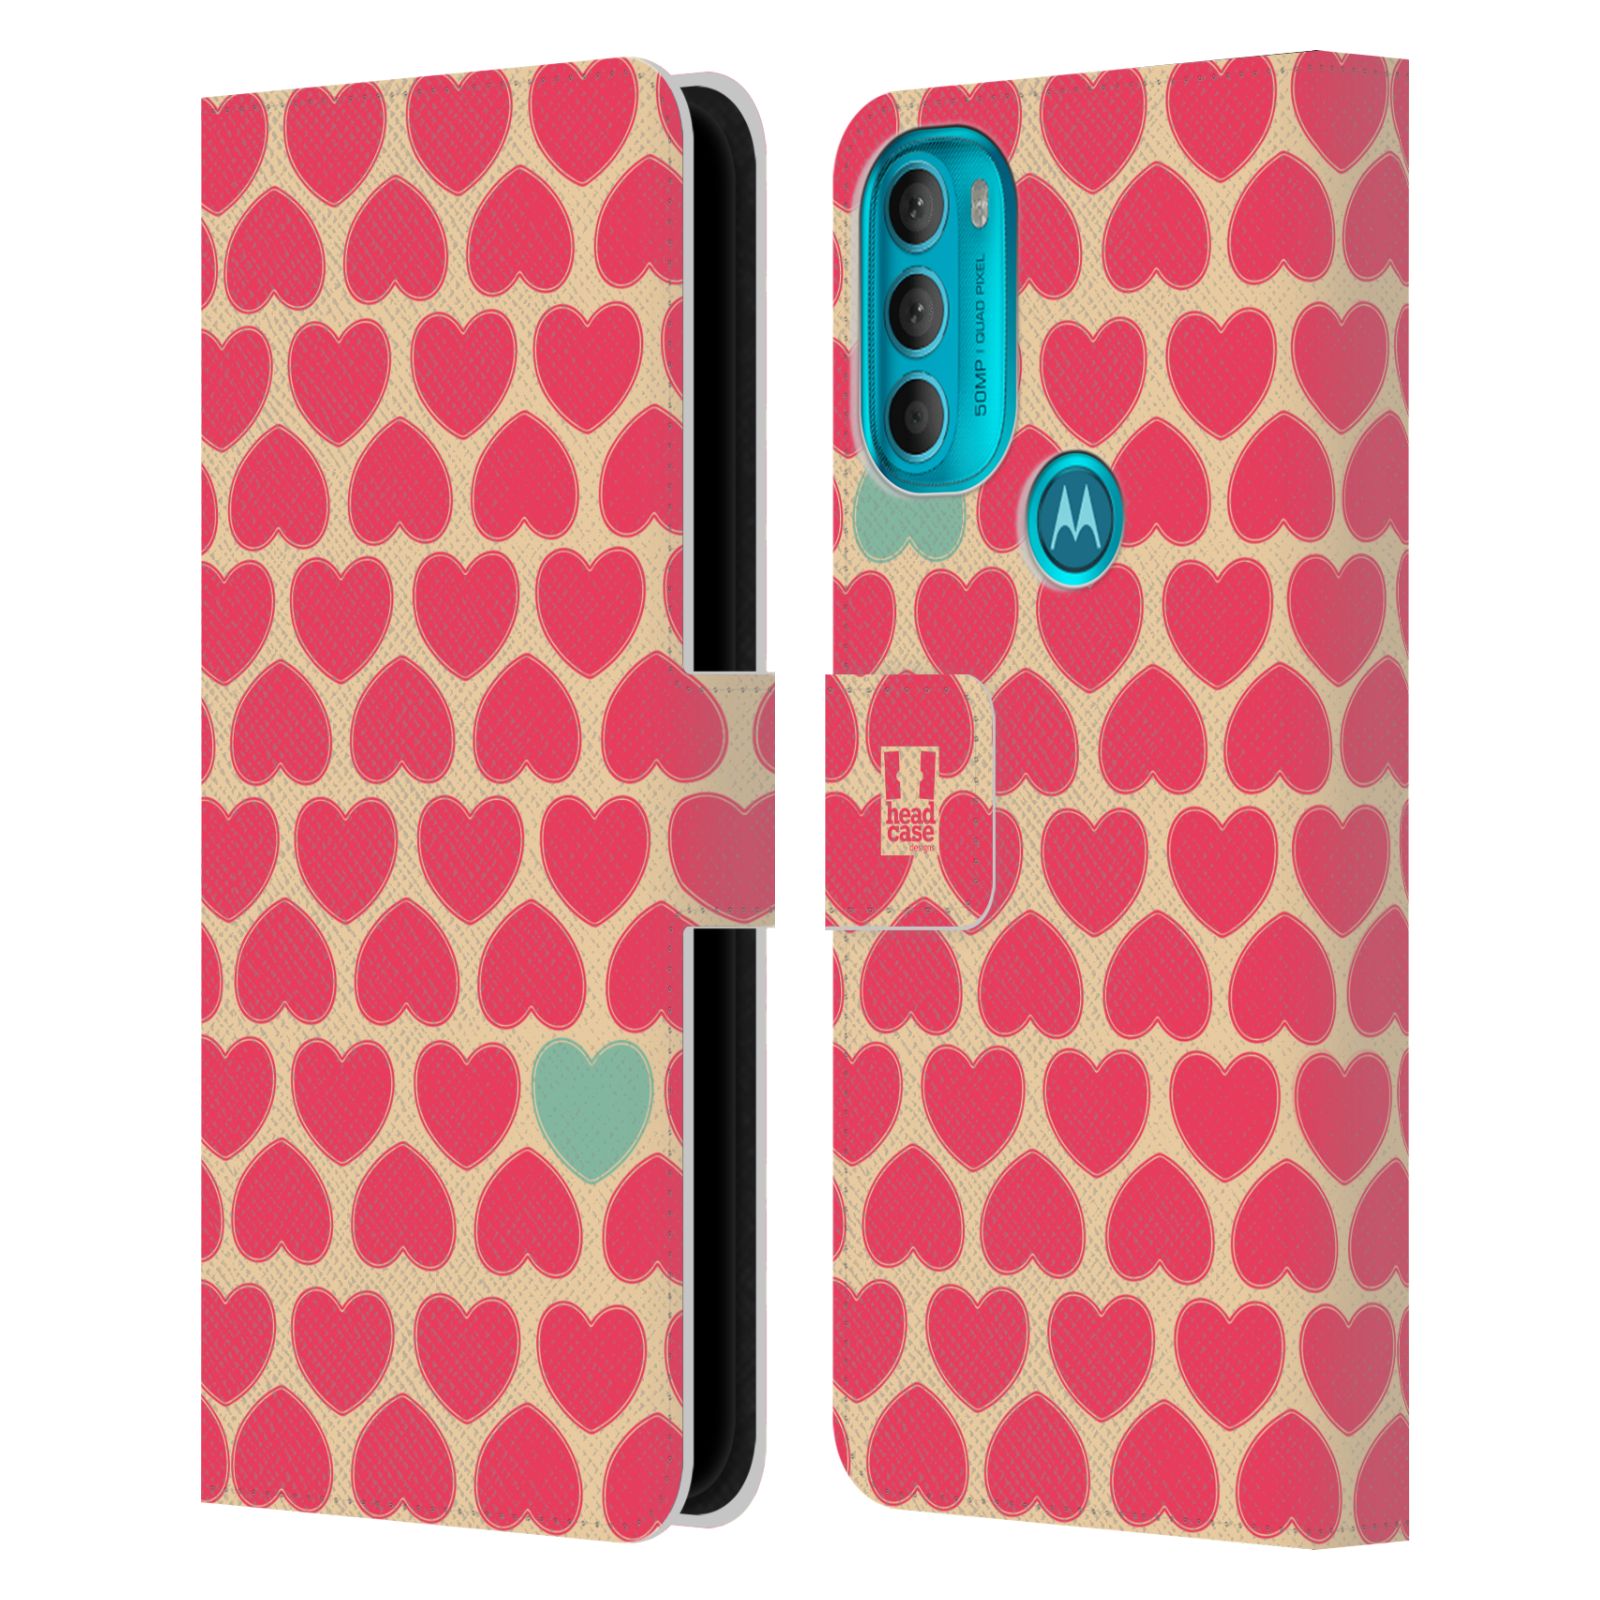 Pouzdro HEAD CASE na mobil Motorola Moto G71 5G vzory barevných srdíček modrá v růžové